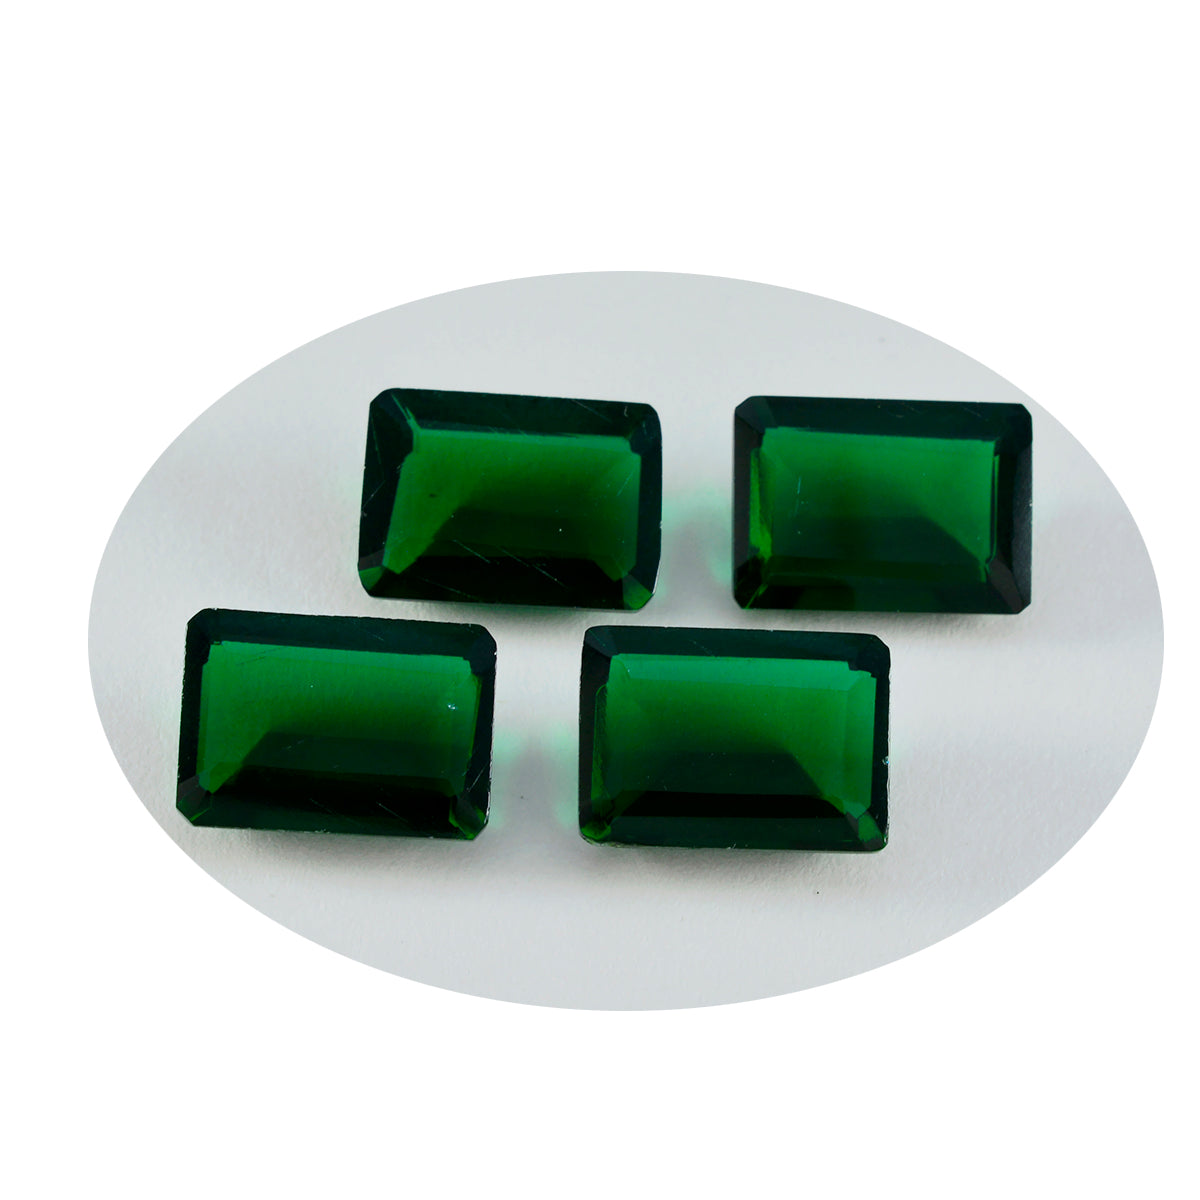 riyogems 1 шт., зеленый изумруд, граненый cz 10x12 мм, восьмиугольная форма, красивый качественный драгоценный камень